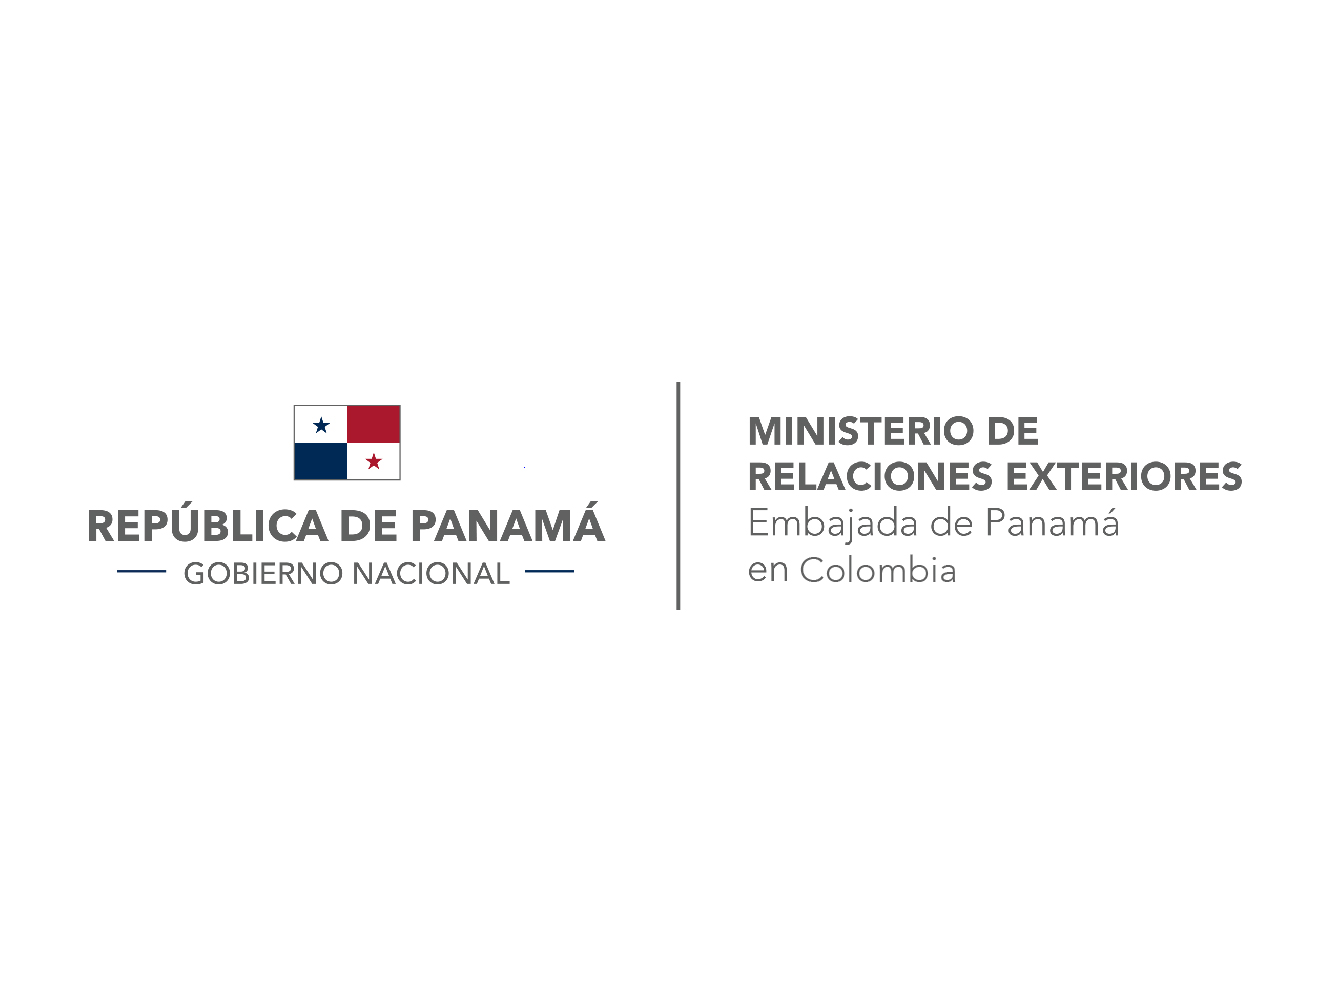 Acercamiento desde la embajada de Panamá para estrechar relaciones con la Universidad de los Andes